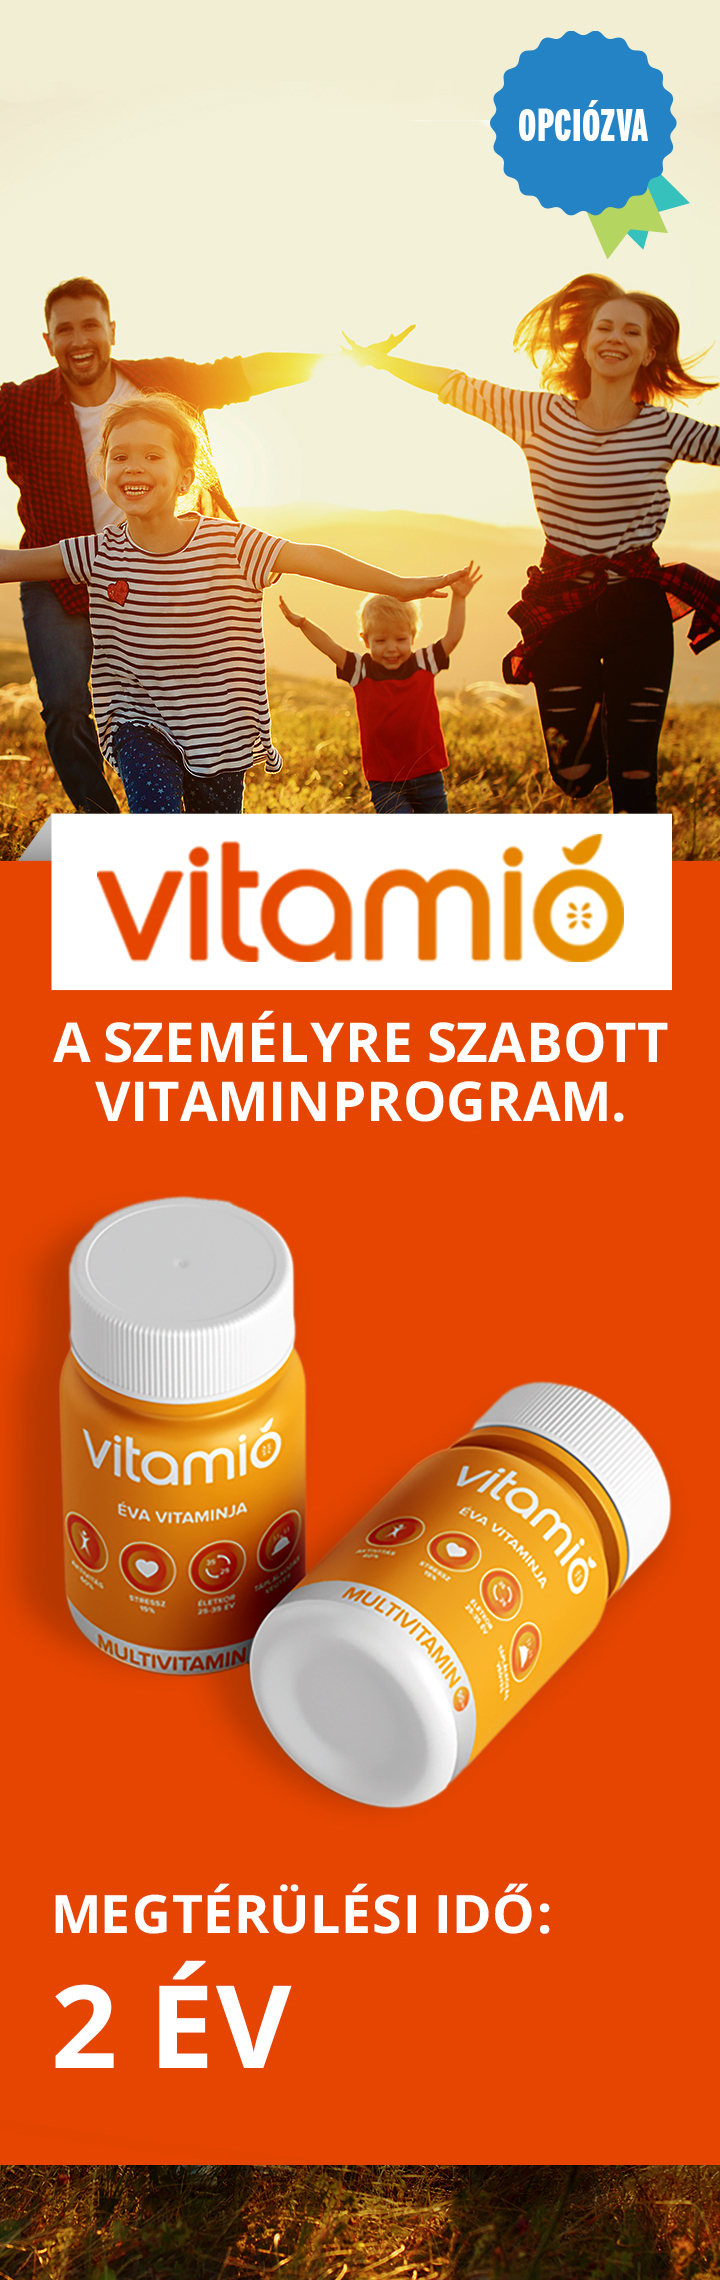 vitamio-mobil-c